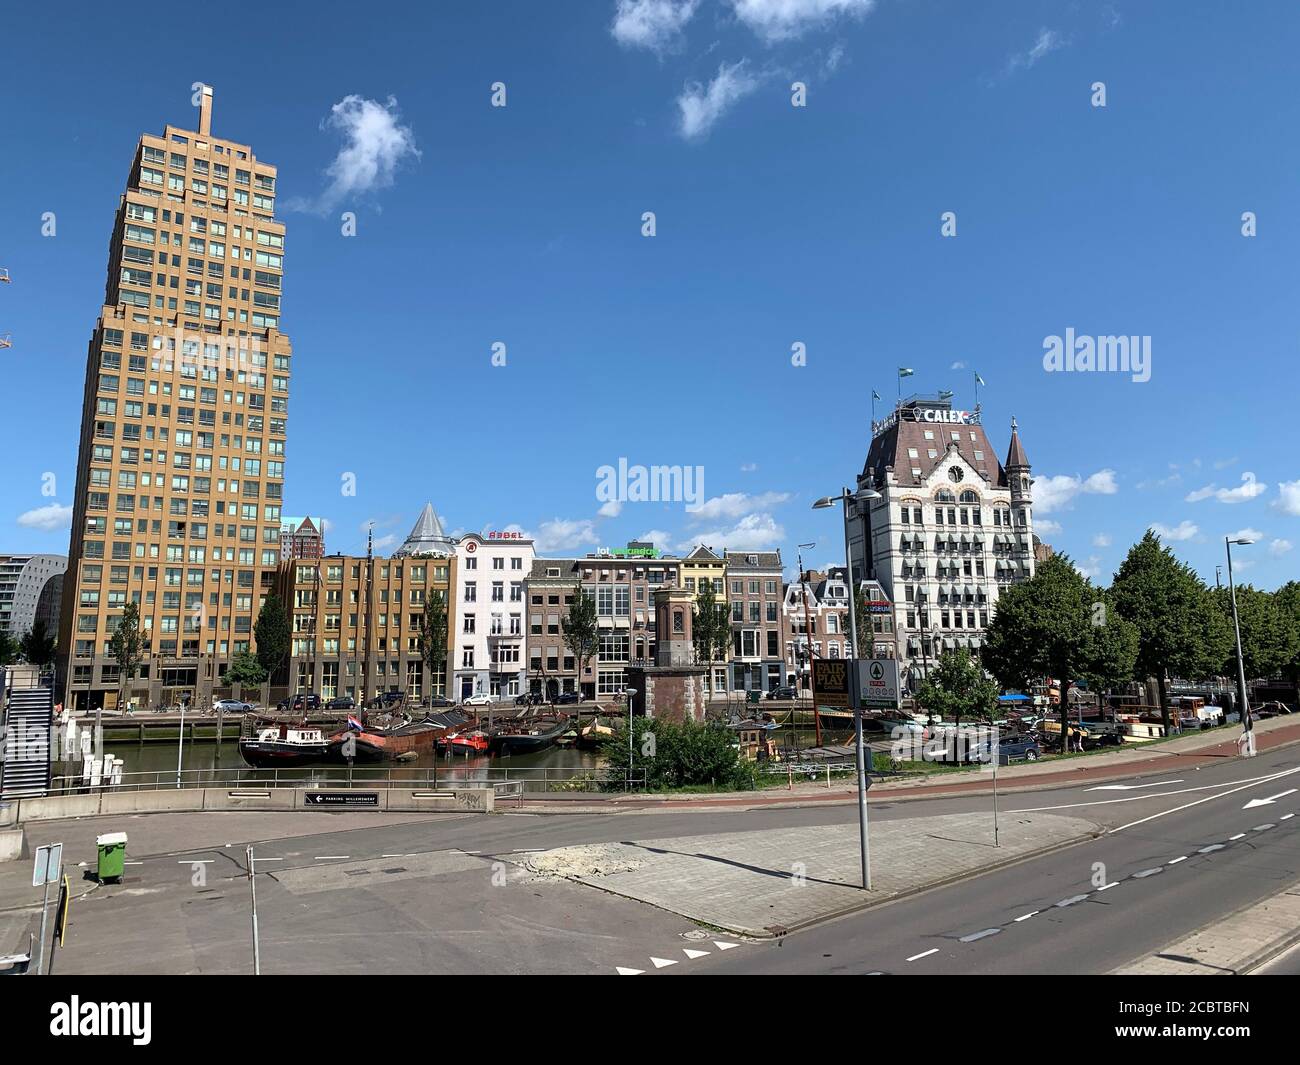 Edificios antiguos en el distrito de Oude Haven. Rotterdam, Holanda del Sur / países Bajos Foto de stock